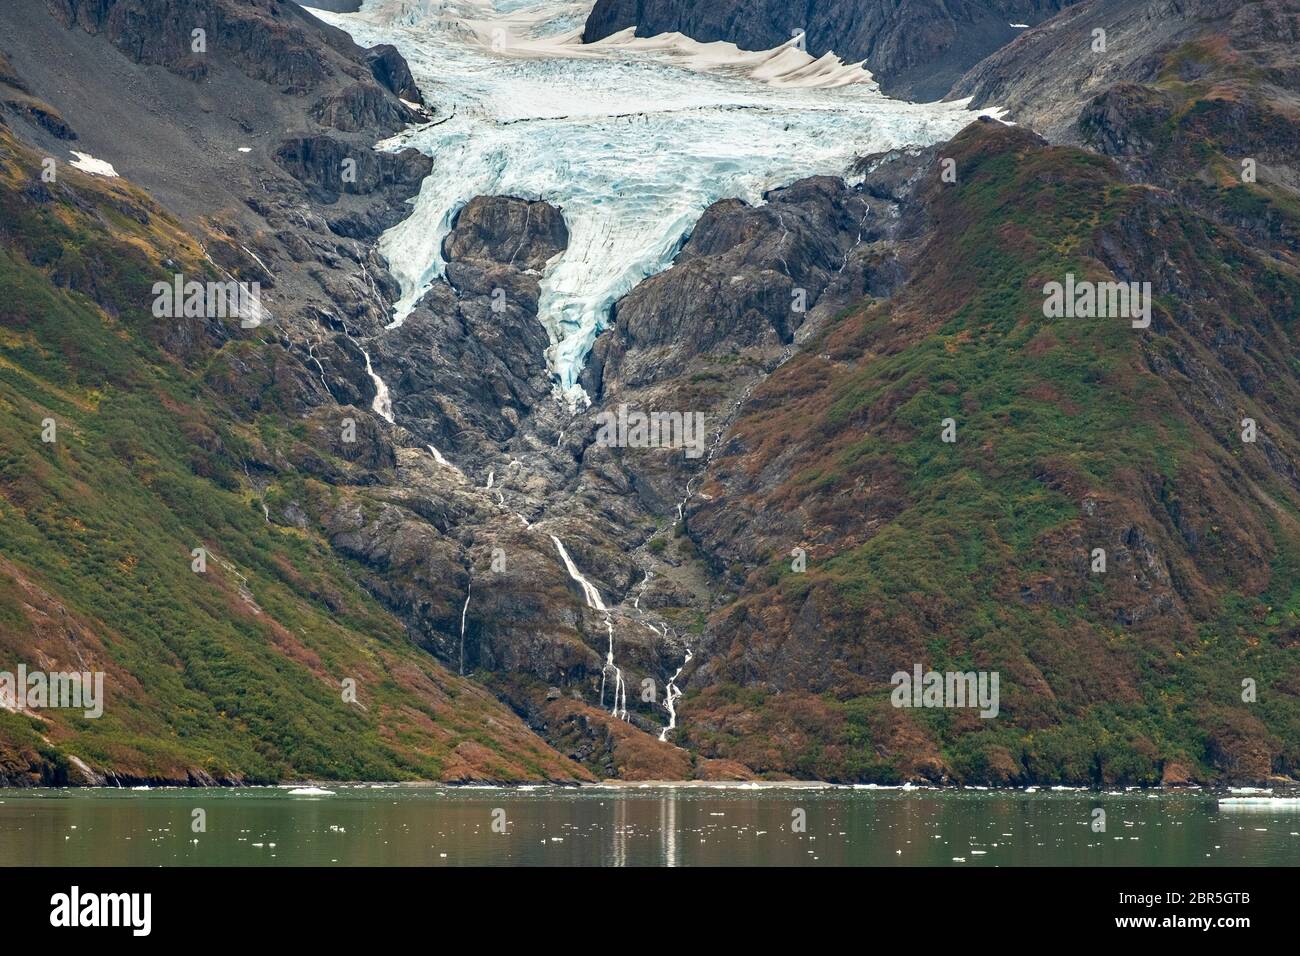 Derrita las cascadas de agua por el Monte Gilbert desde el Glaciar Serpentine en Barry Arm en el fiordo Harriman, cerca de Whittier, Alaska. El glaciar se ha retredado dramáticamente de un glaciar de aguas residuales a convertirse en un glaciar colgante. Foto de stock